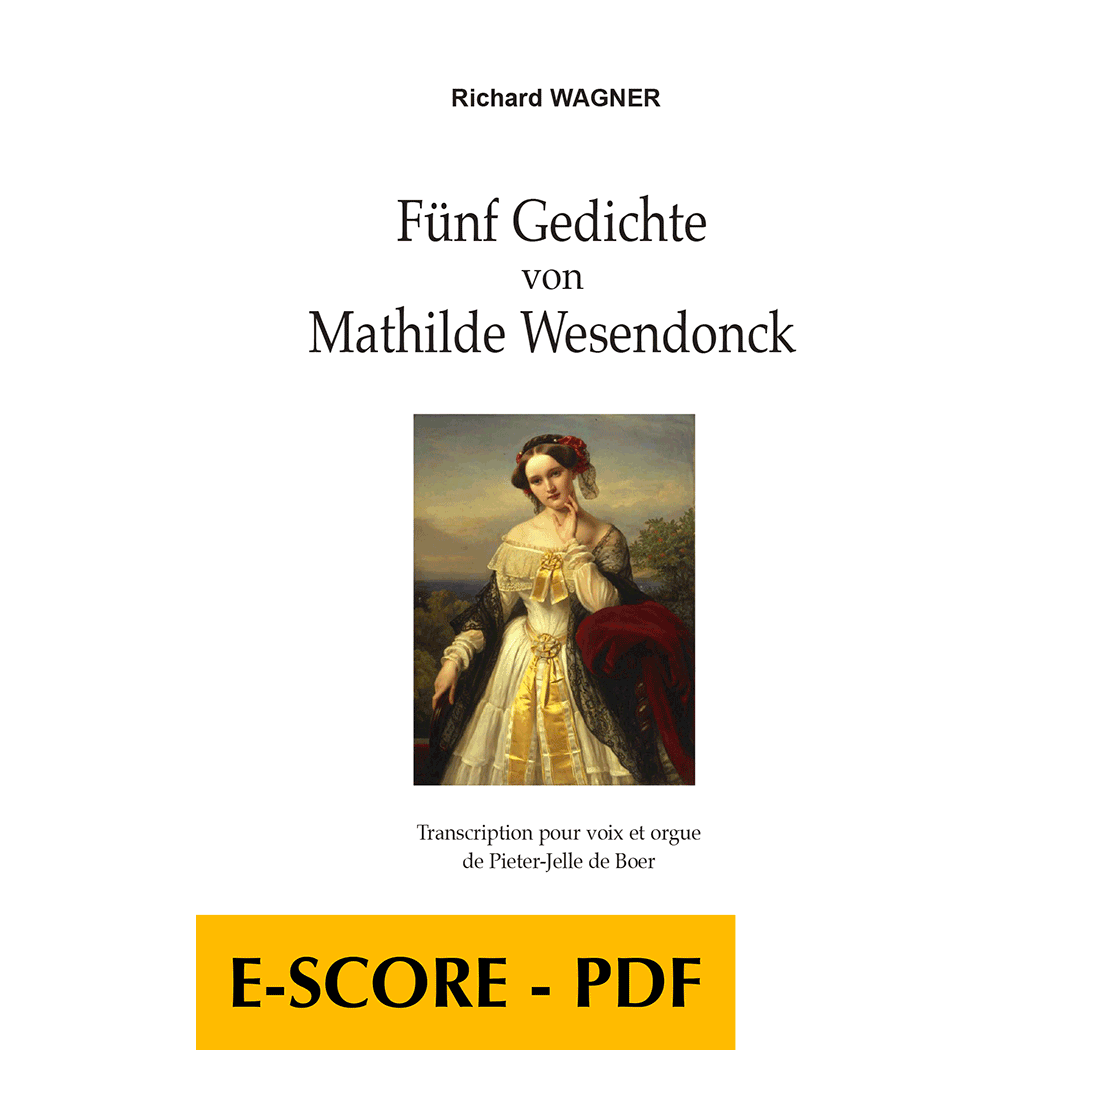 Fünf Gedichte von Mathilde Wesendonck für Frauenstimme und Orgel - E-Score PDF